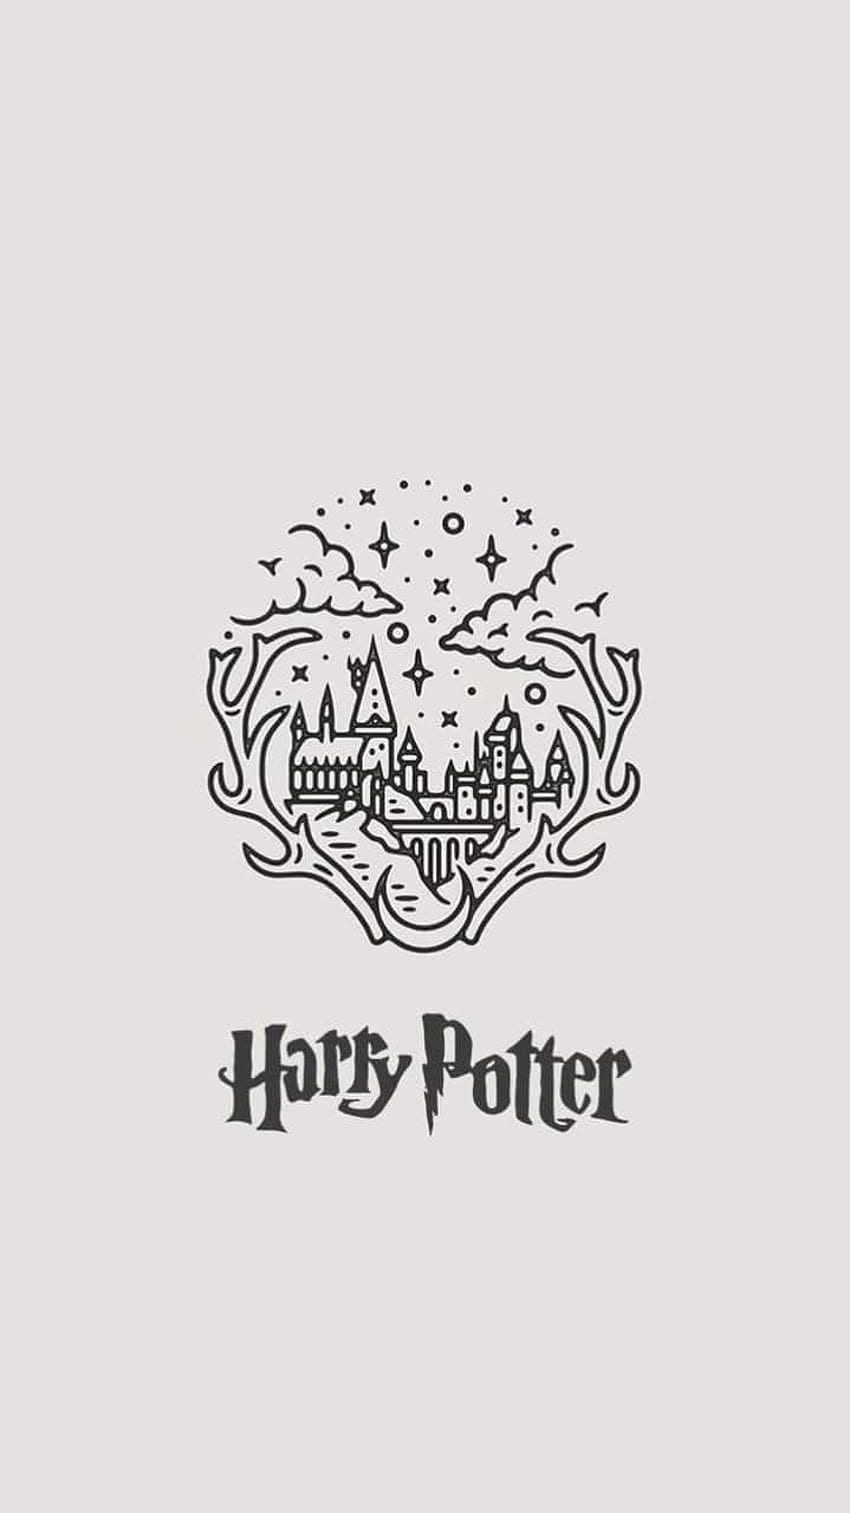 Với họa tiết trang trí chủ đề Harry Potter màu hồng tươi tắn, hình nền này sẽ đưa bạn vào thế giới phù thủy thần tiên của Harry Potter. Hãy xem hình ảnh để cảm nhận sự phấn khích và hạnh phúc khi ngắm nhìn.